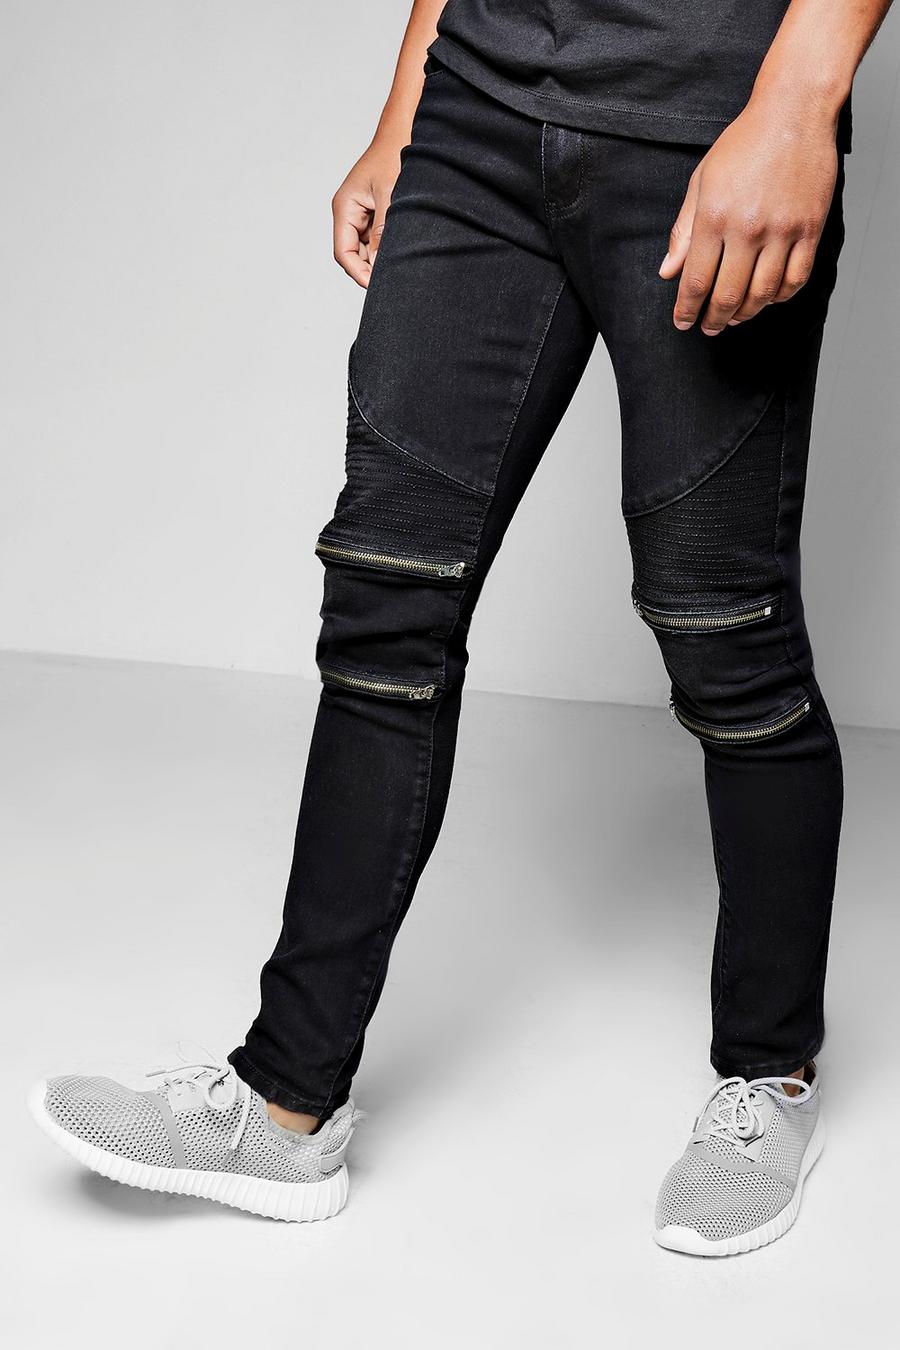 Мужские джинсы с молниями. Guess skinny Fit Biker Jeans мужские. Millennials Biker Fit джинсы мужские. Джинсы с молниями на штанинах. Джинсы мужские с замками.